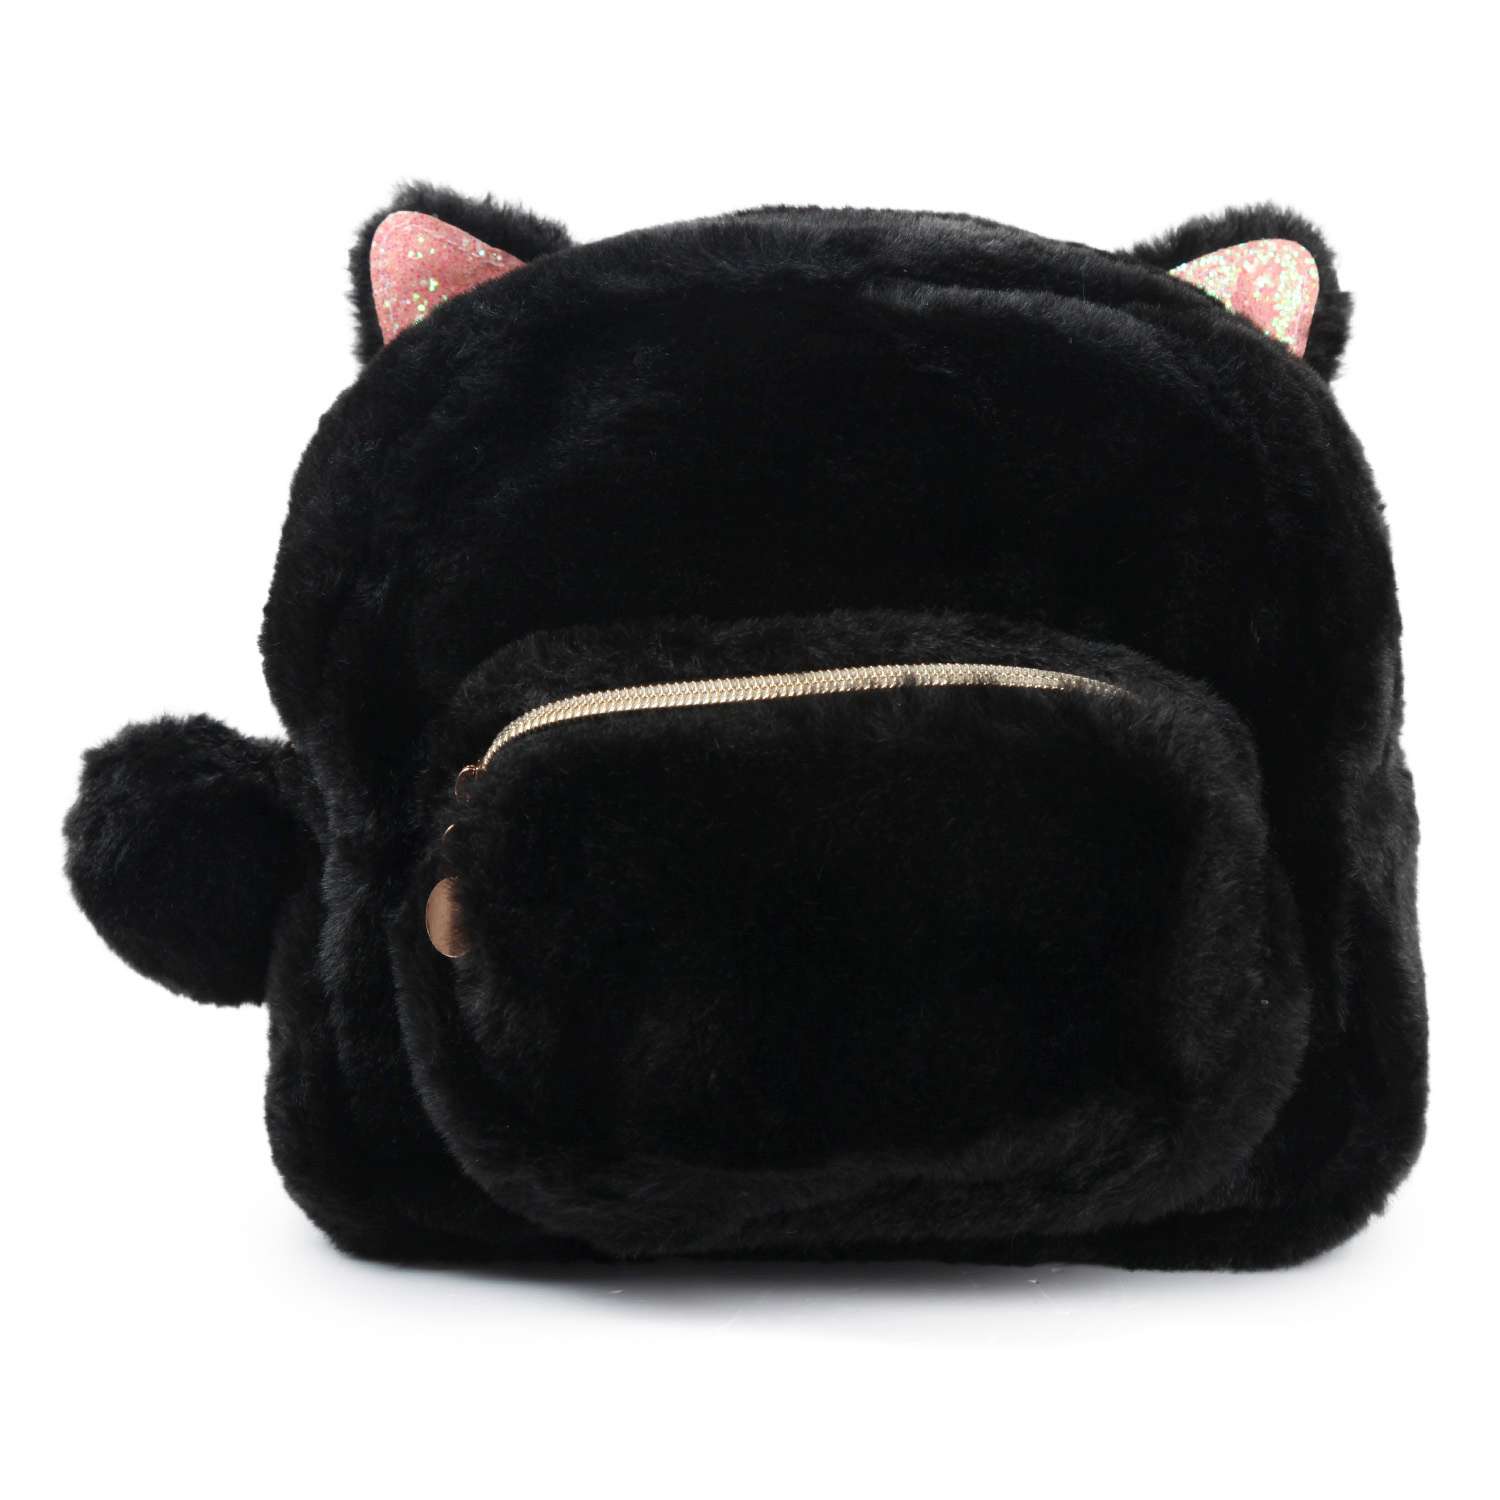 Рюкзак Johnshen PinkMagic Кошка Черный MF992522-1 - фото 1